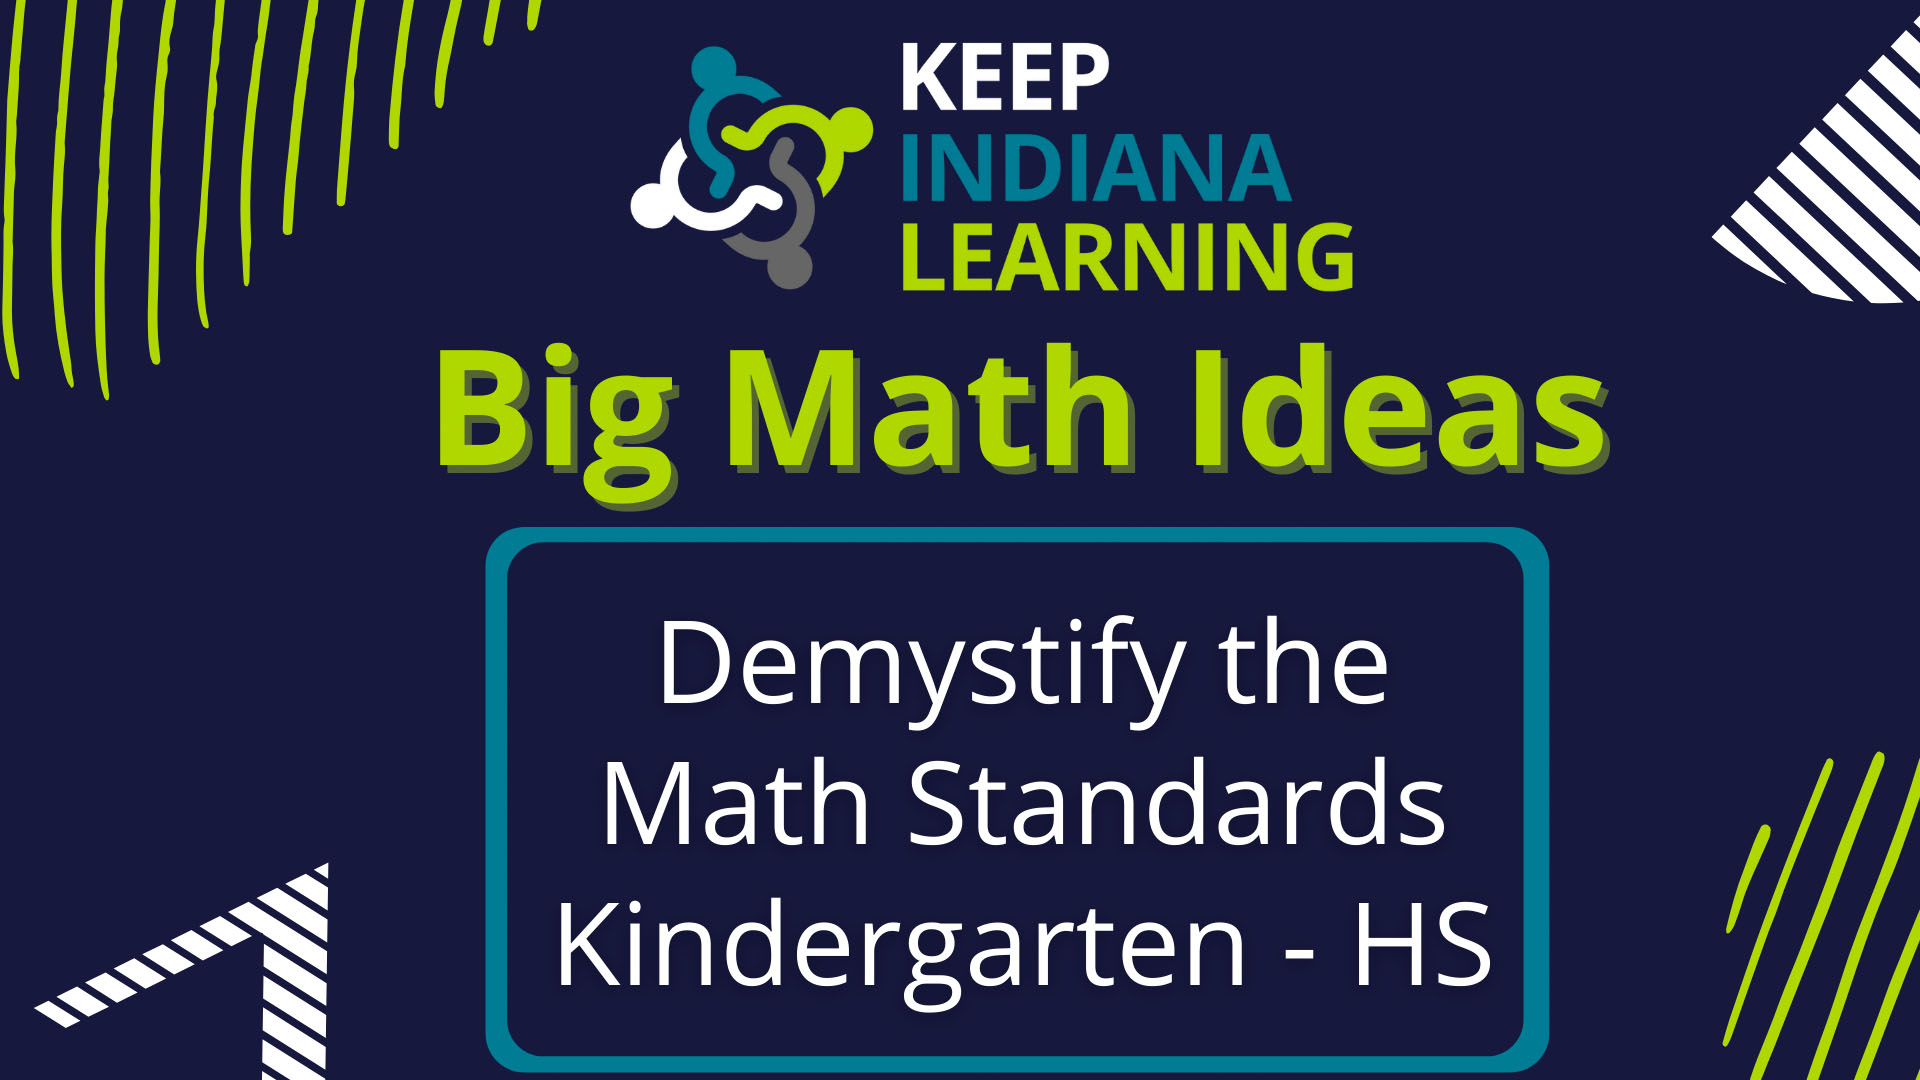 Big Math Ideas Keep Indiana Learning